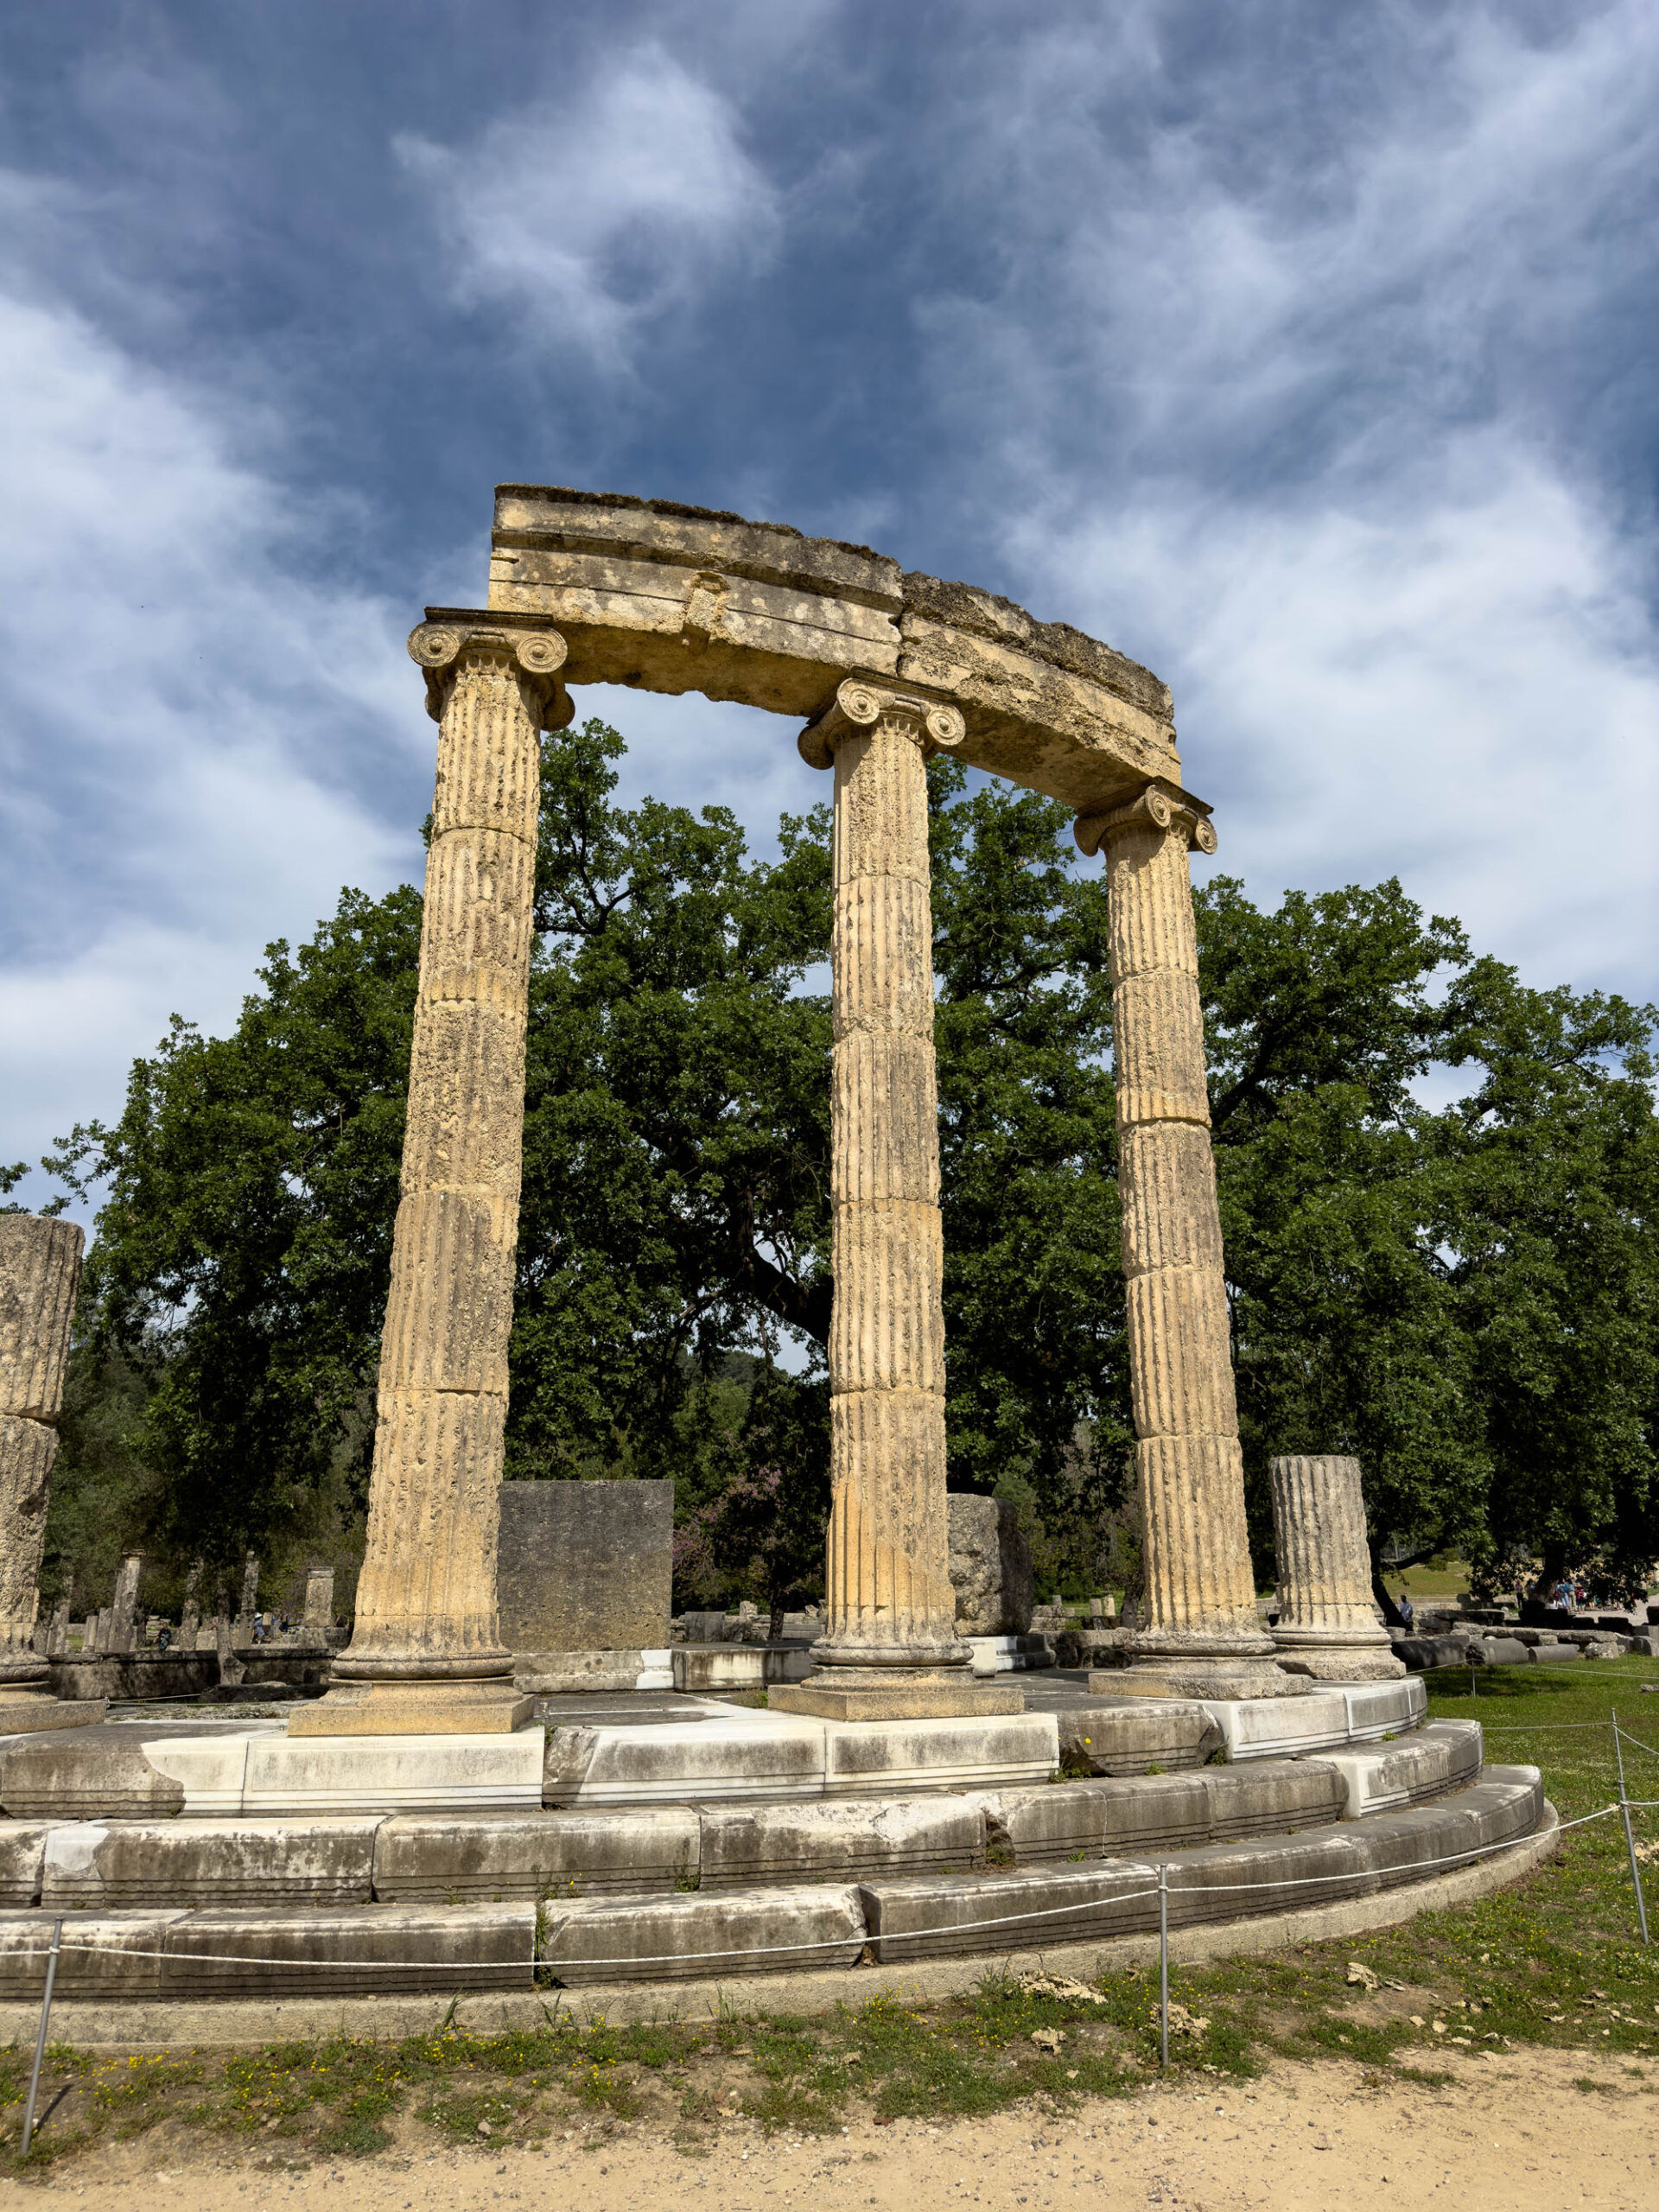 Temple of Hera, Olympia, Greece.